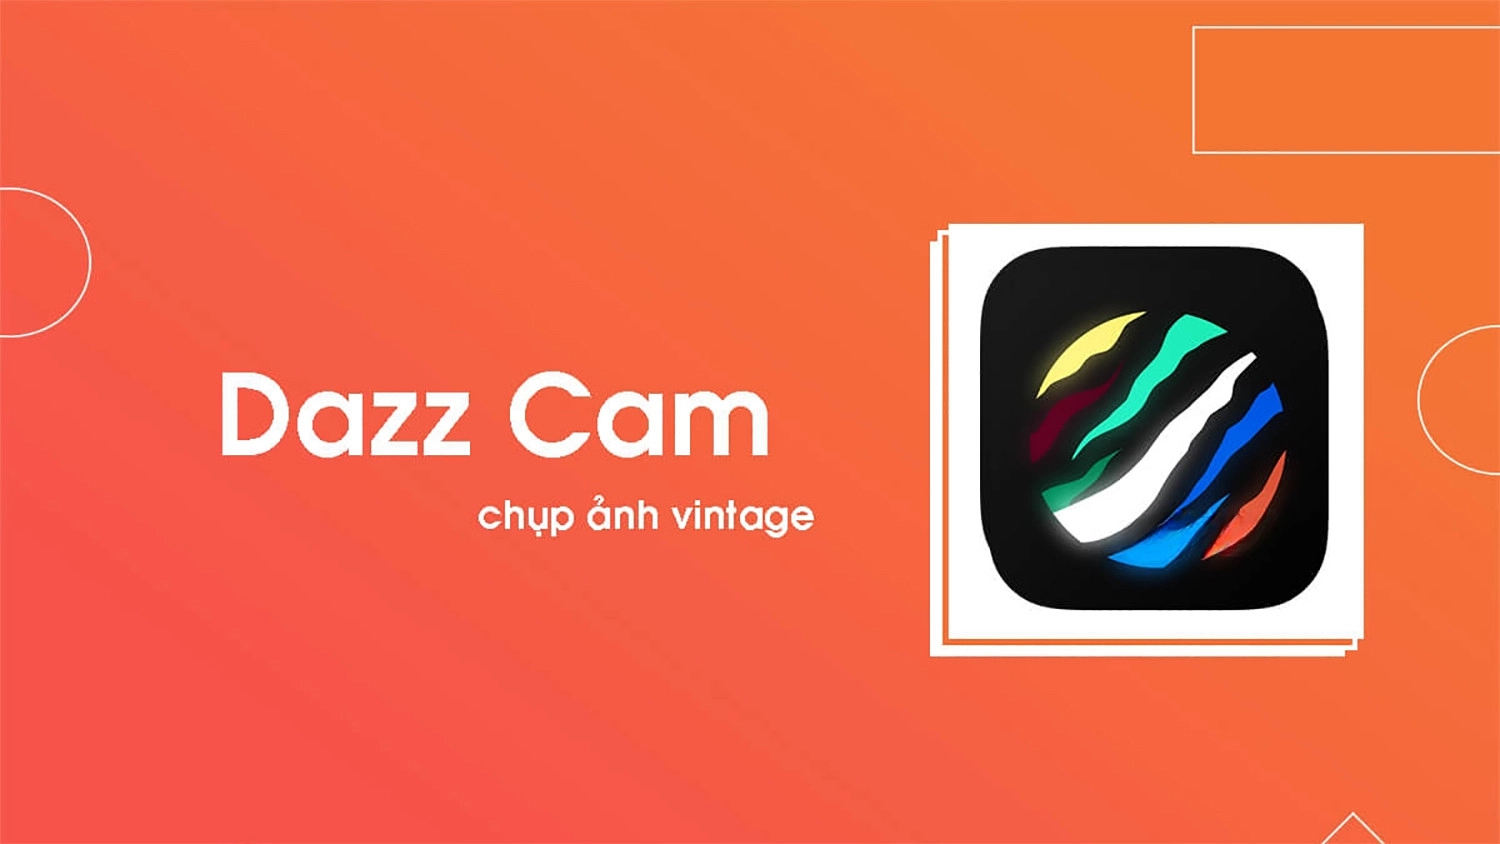 Dazz Cam với camera đem vibe cổ điển